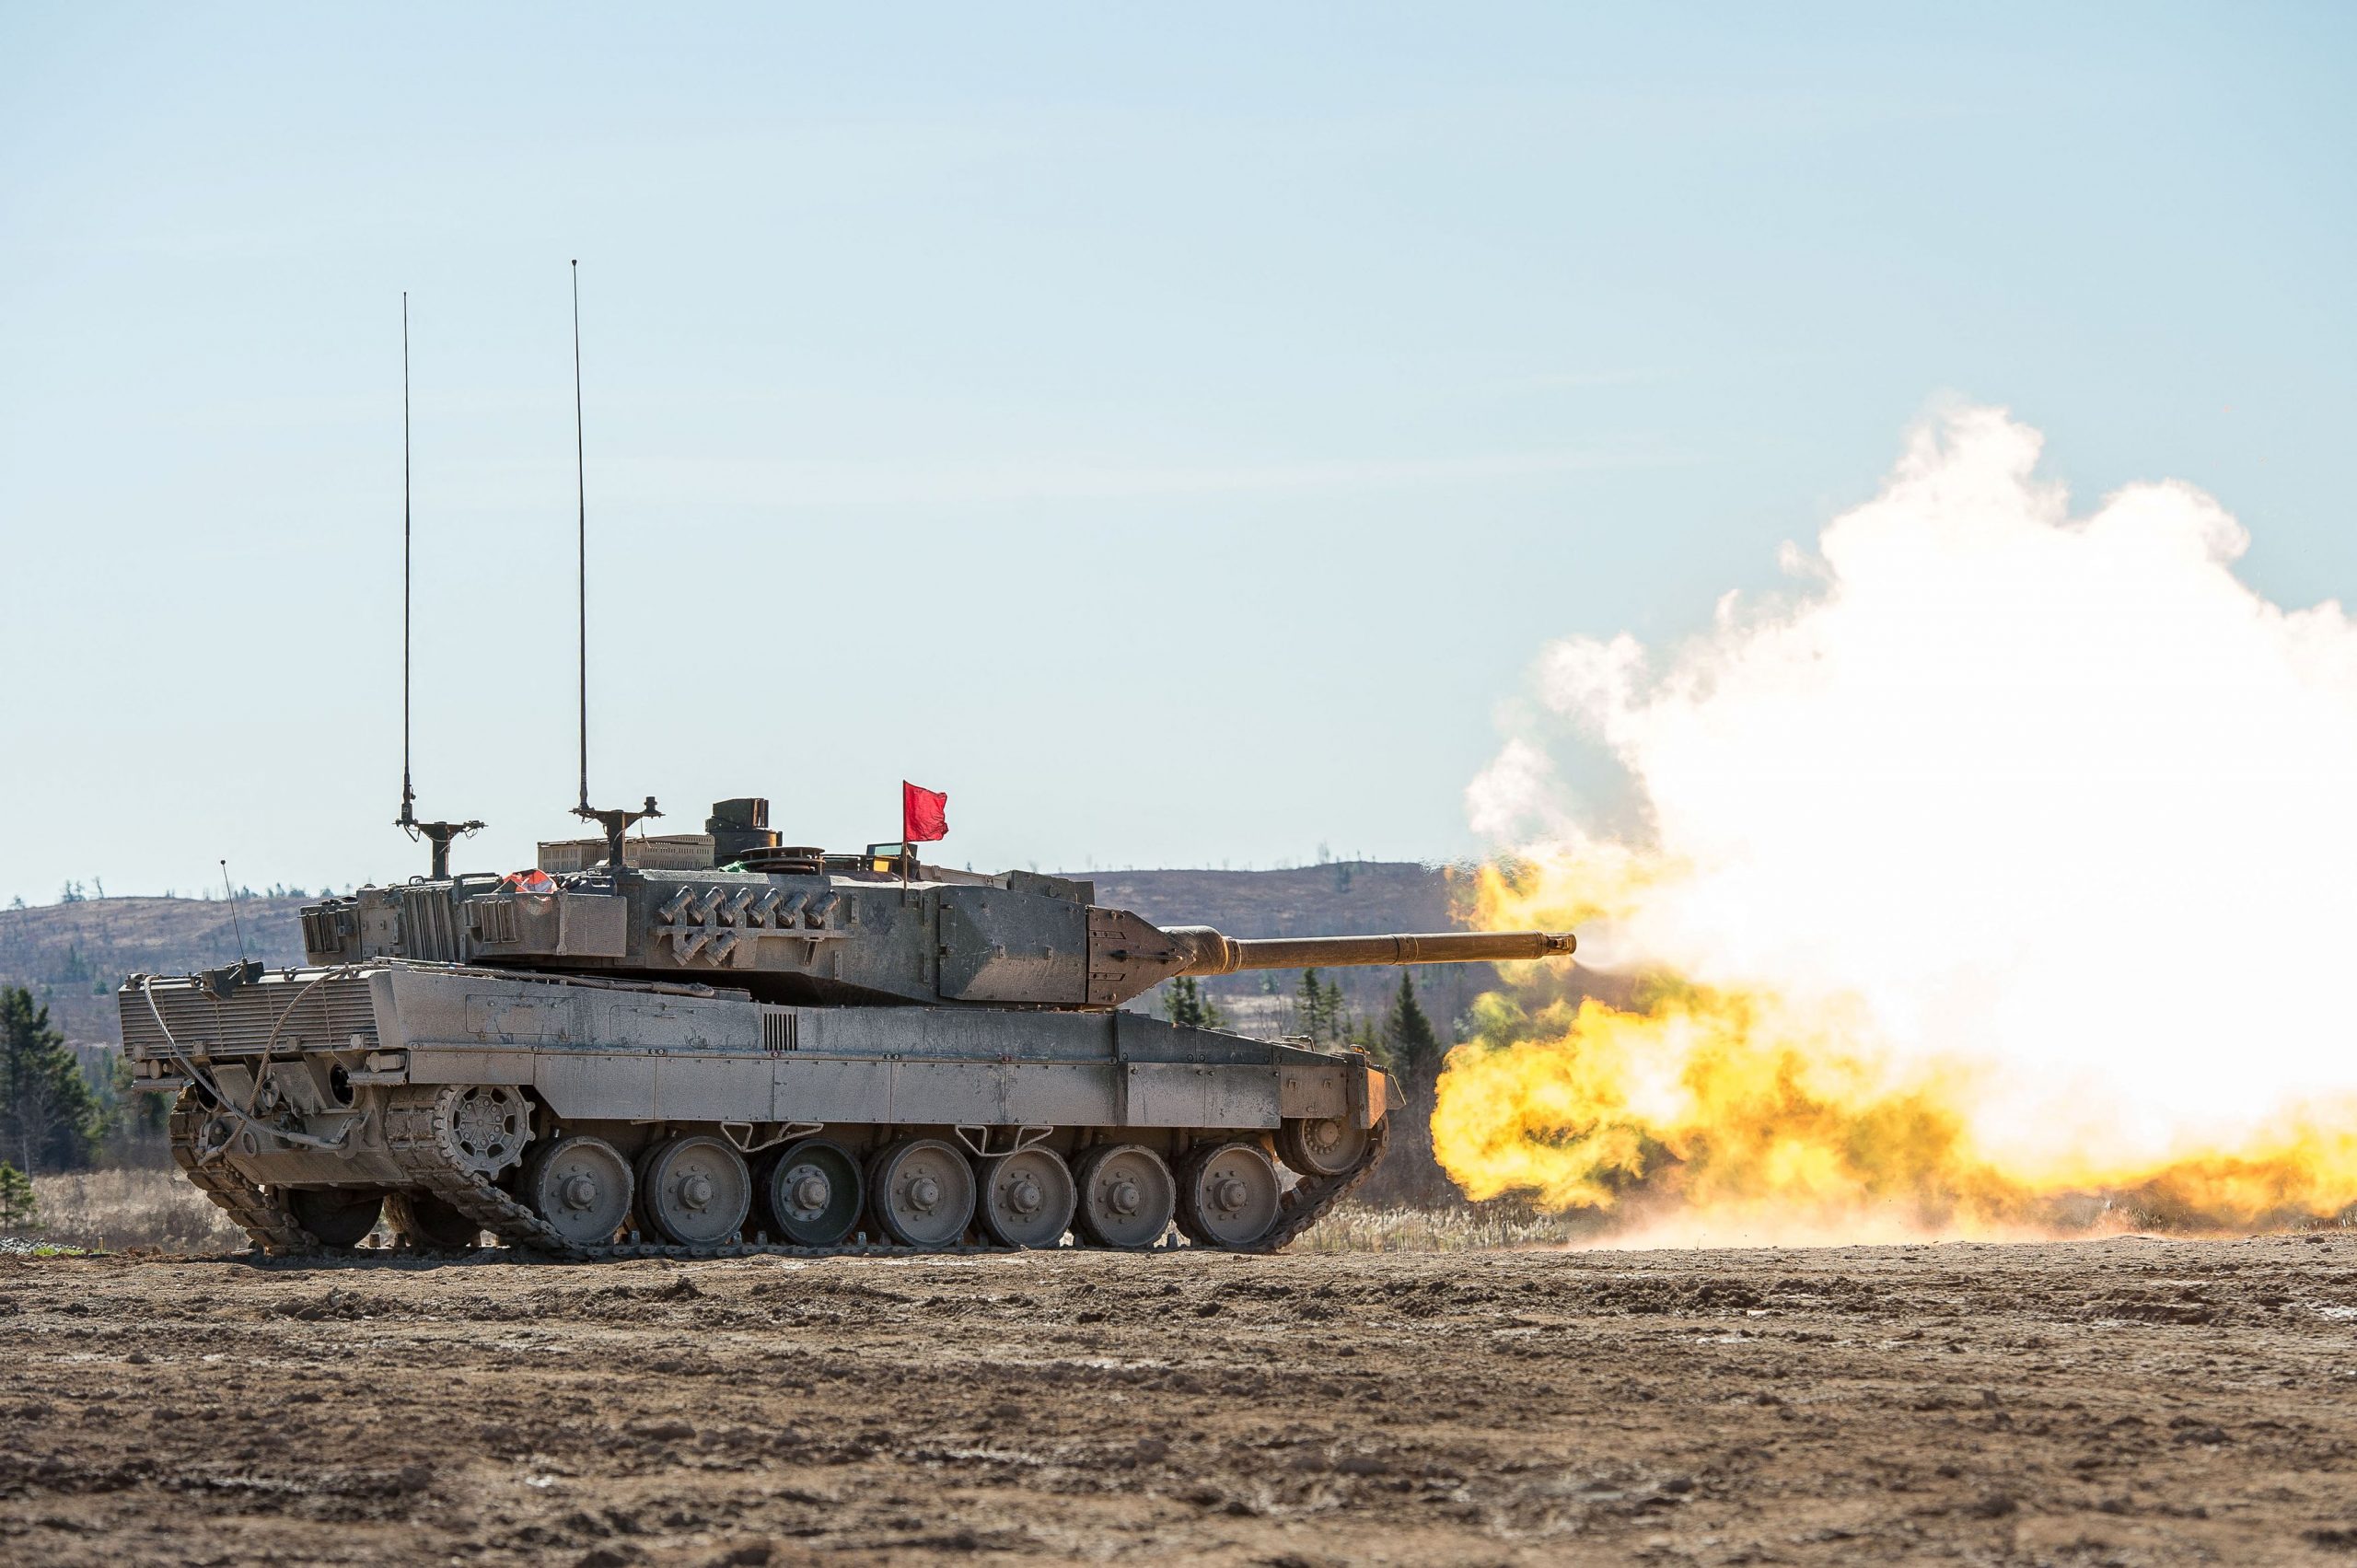 Ουκρανία: Θα είναι «game changer» του πολέμου τα άρματα μάχης;